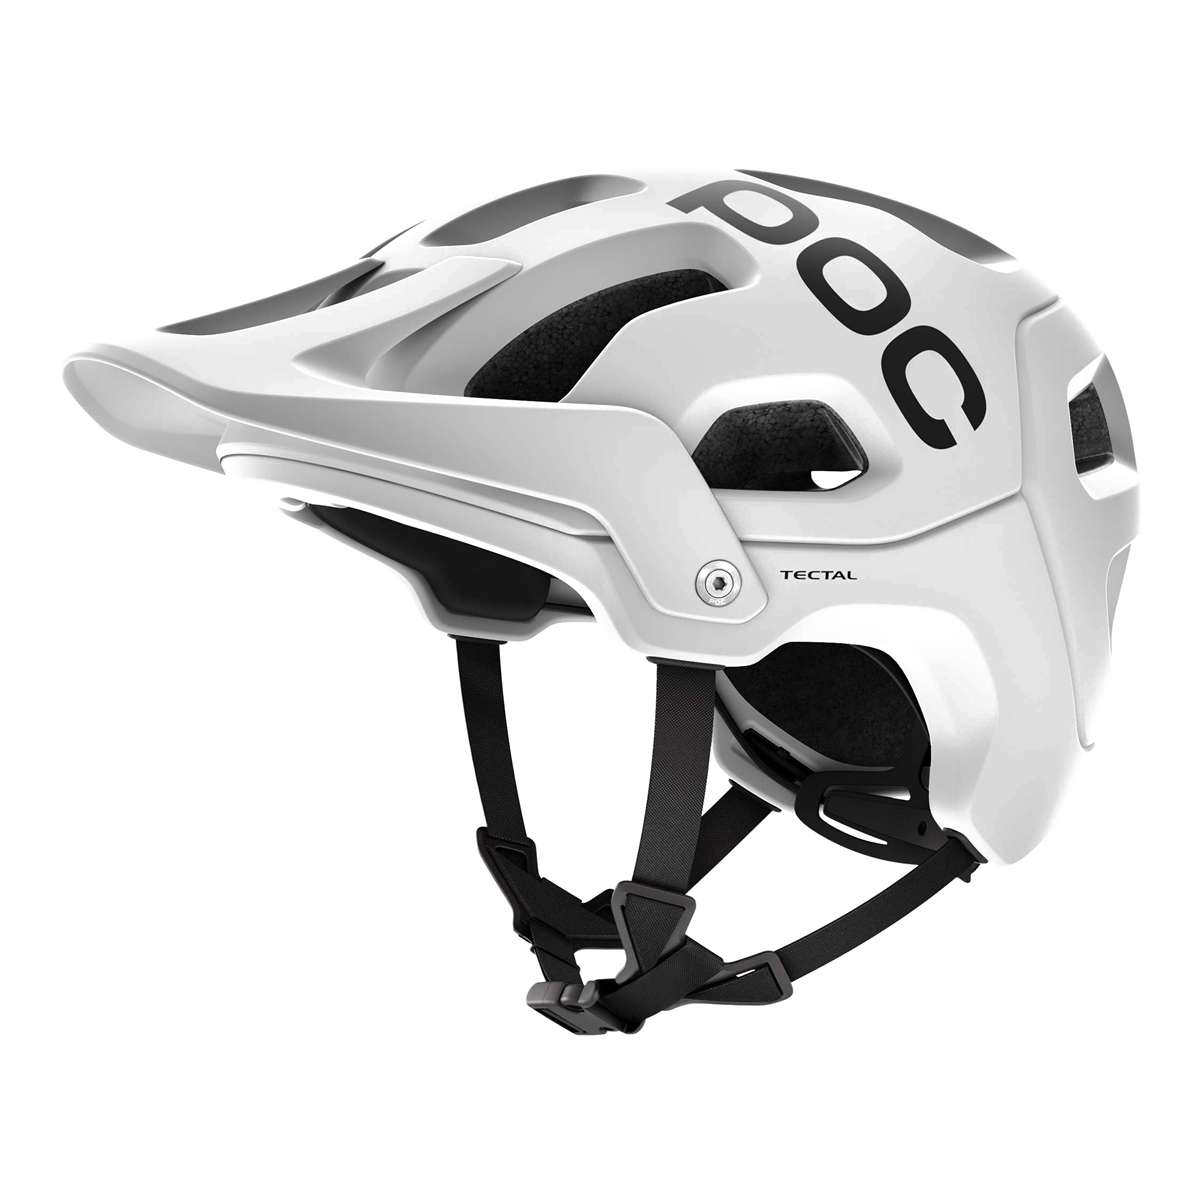 Enduro helmet Tectal white size XL-XXL (59-62cm)